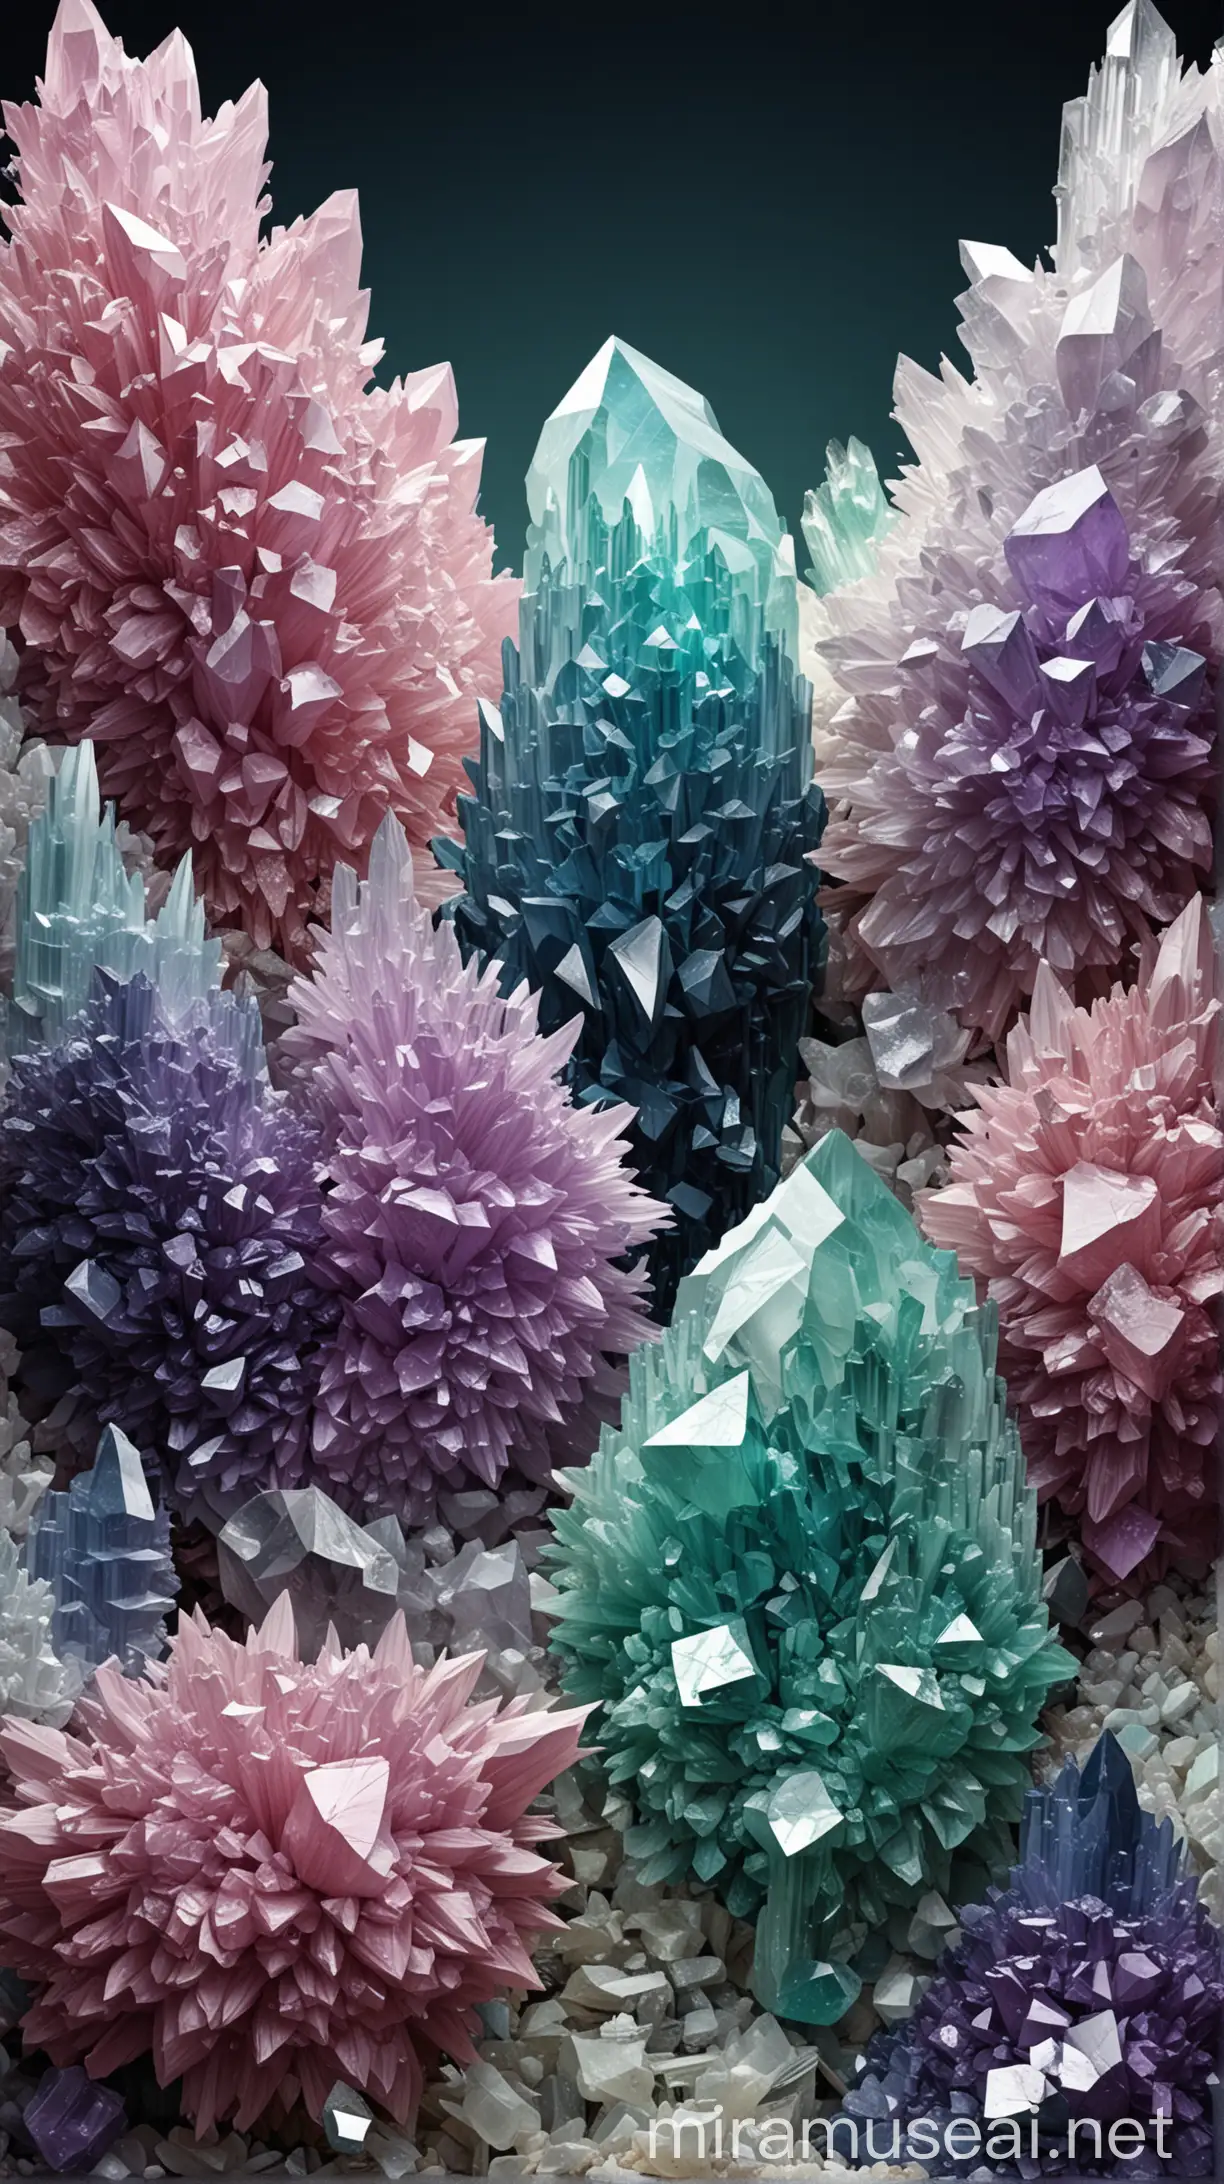 关于矿石杂志的封面，标题，介绍，带有各种颜色的水晶、矿石和萤石，组成一个美丽的简约的科普类型的杂志封面